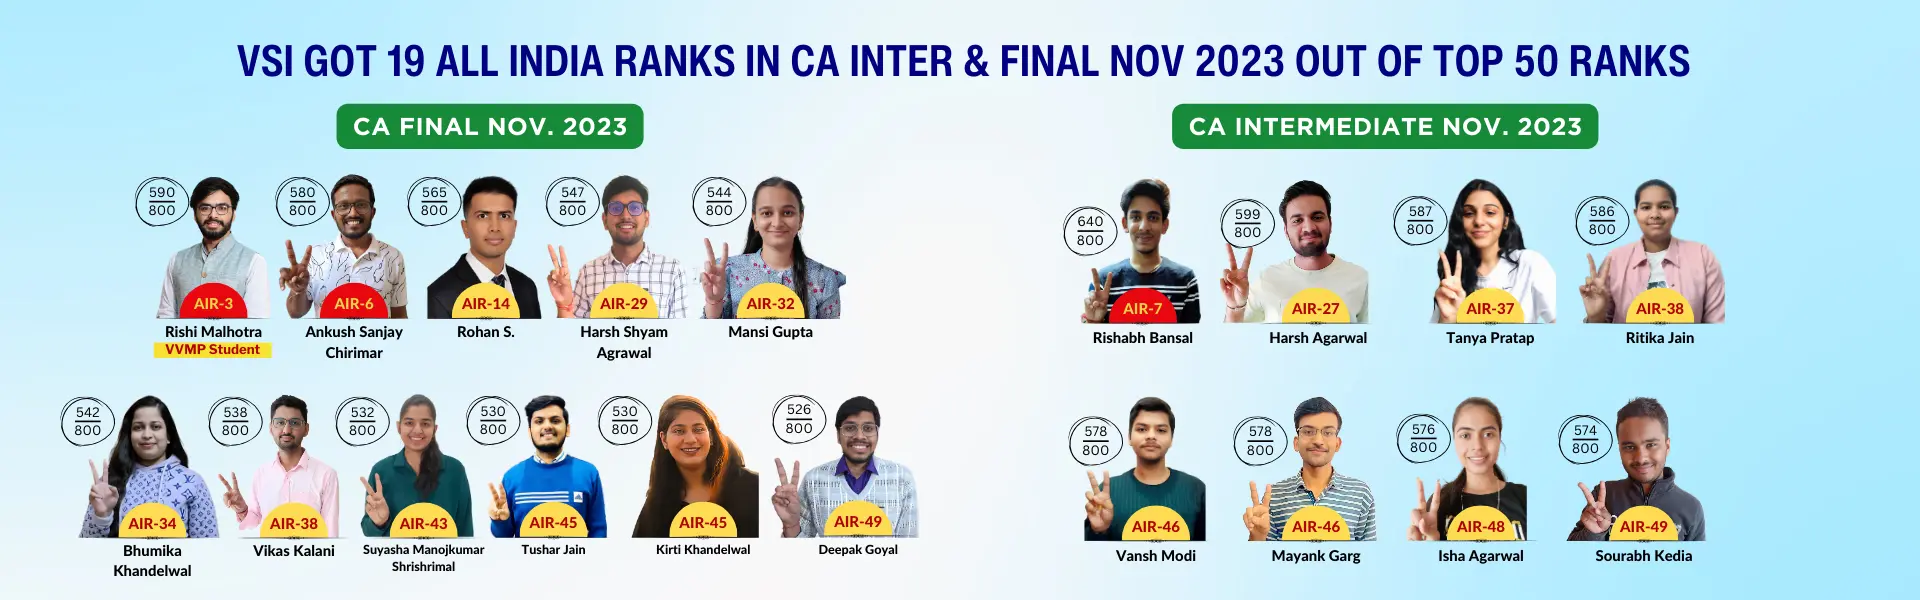 VSI Got 19 All India Ranks in CA Intermediate & Final Nov. 2023 Out of Top 50 Ranks